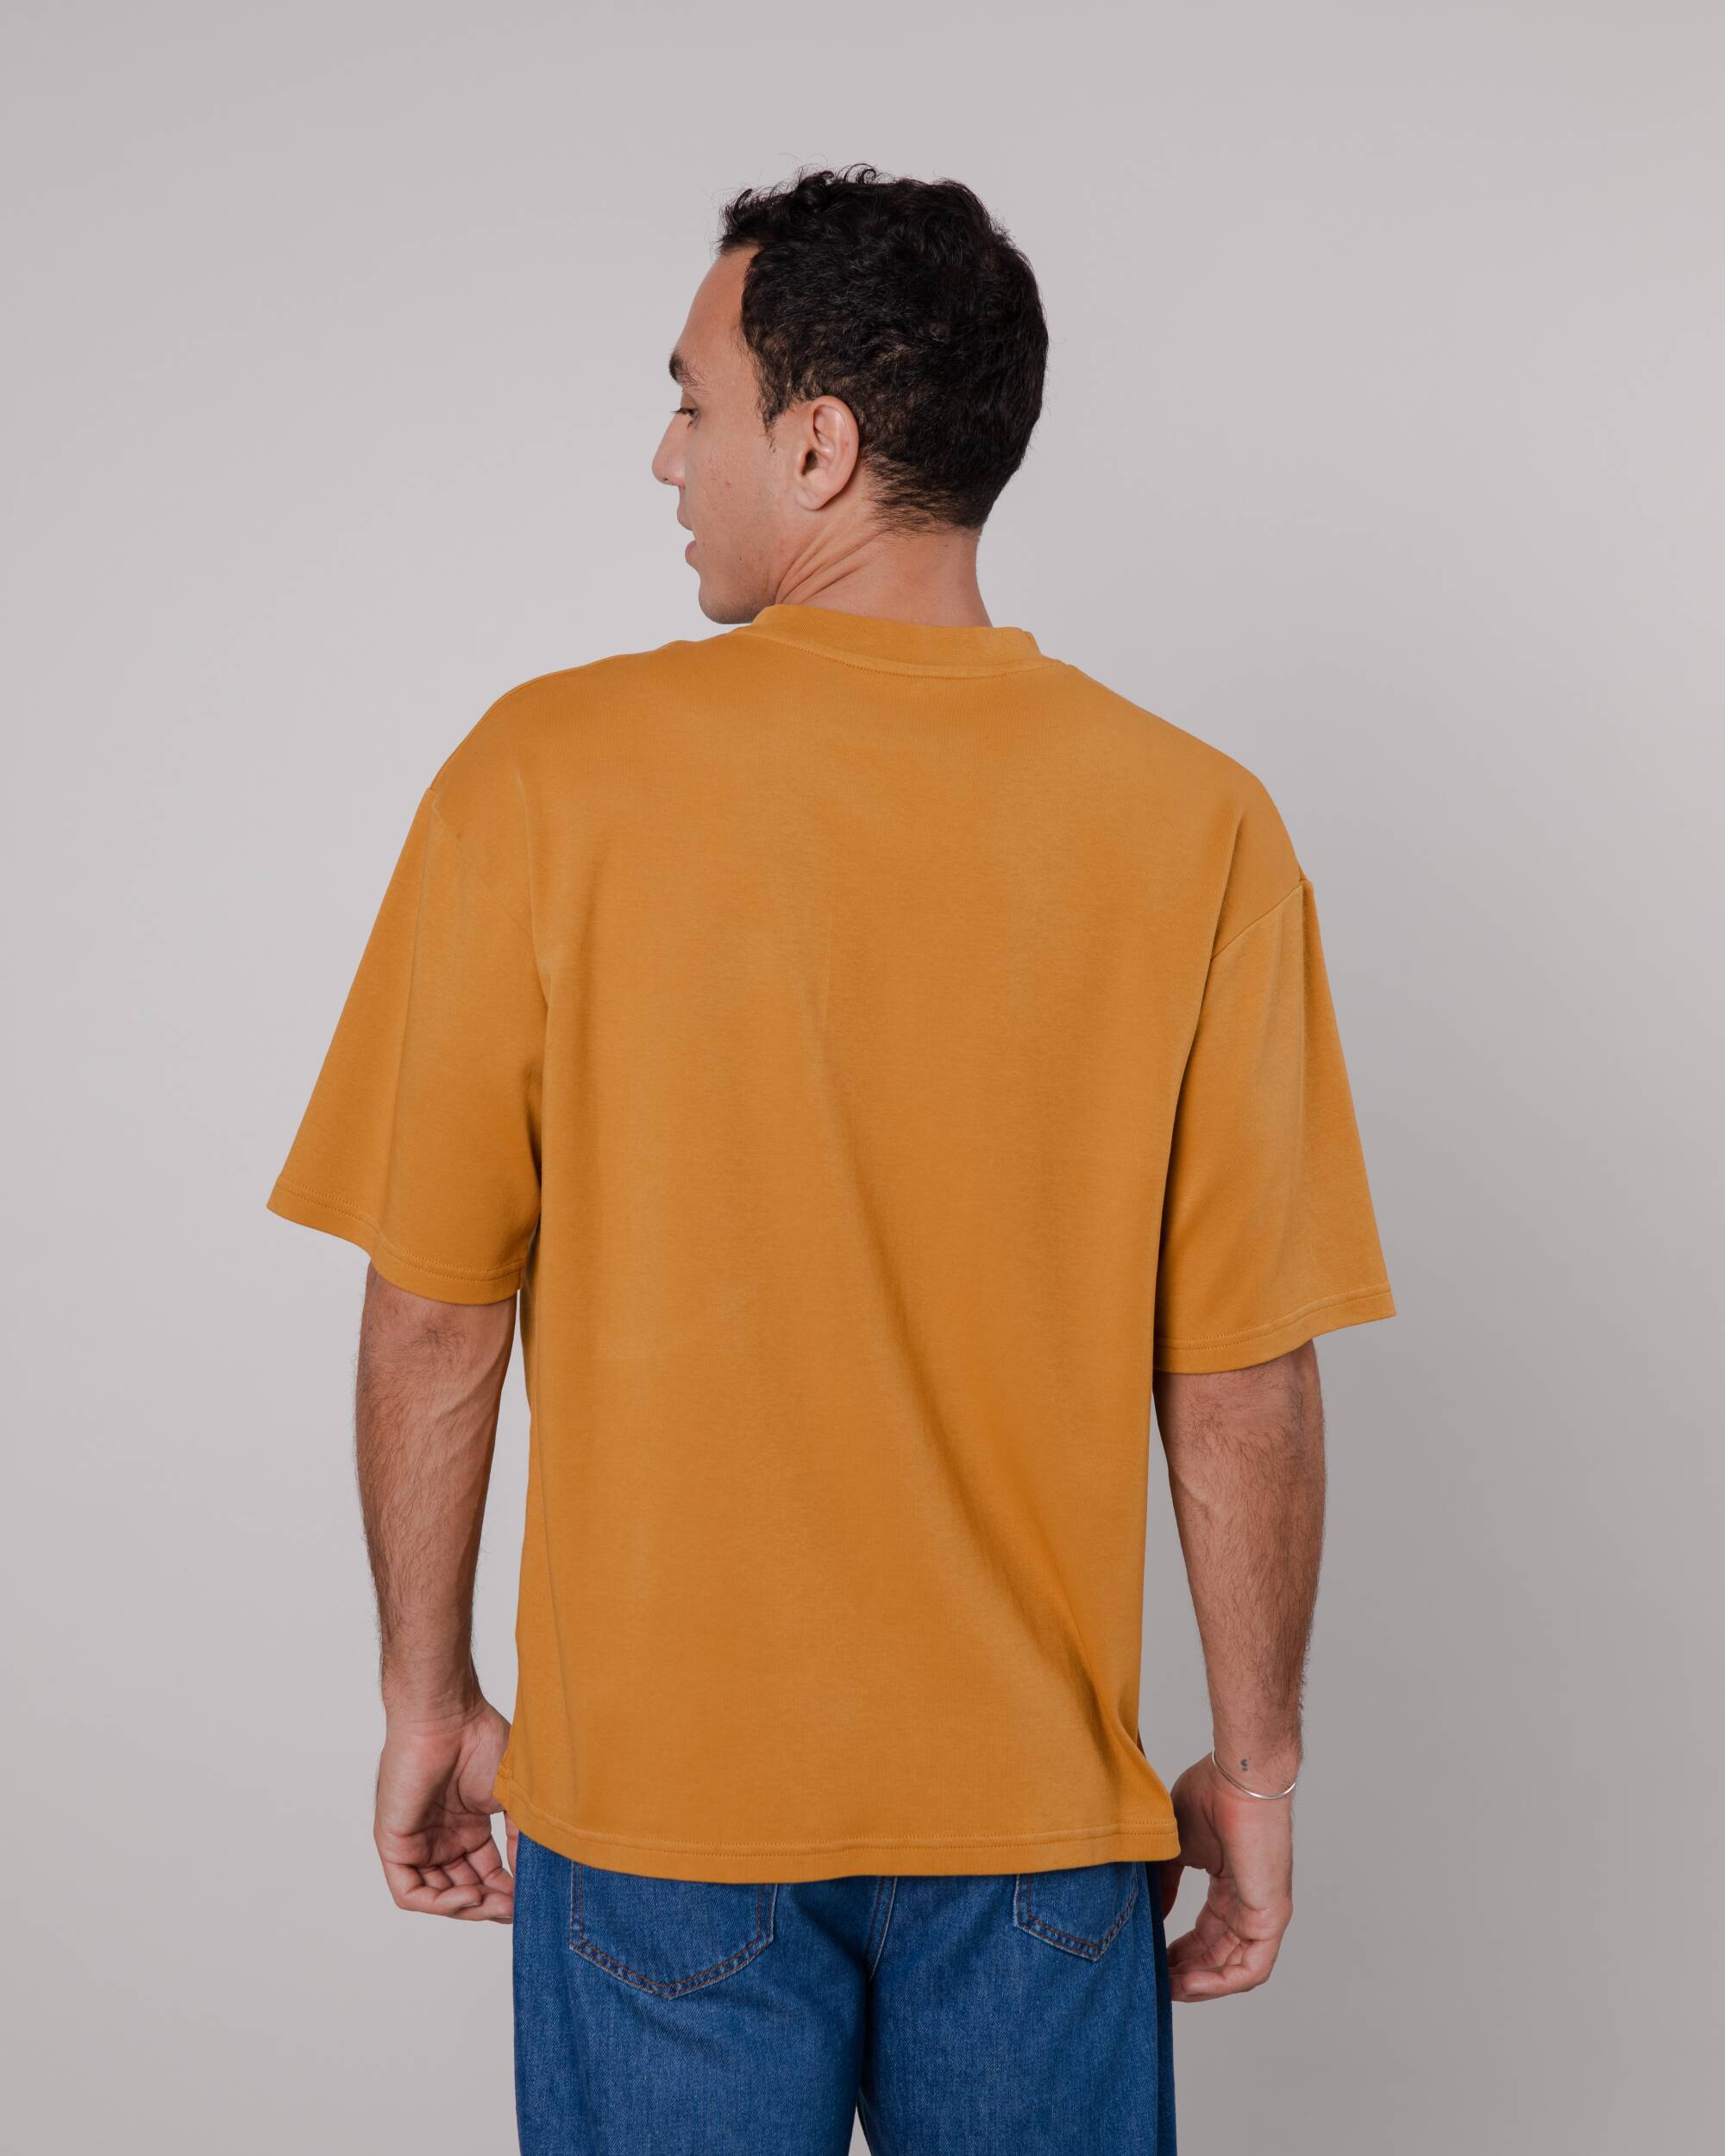 T-shirt Toffee oversize en coton biologique de Brava Fabrics